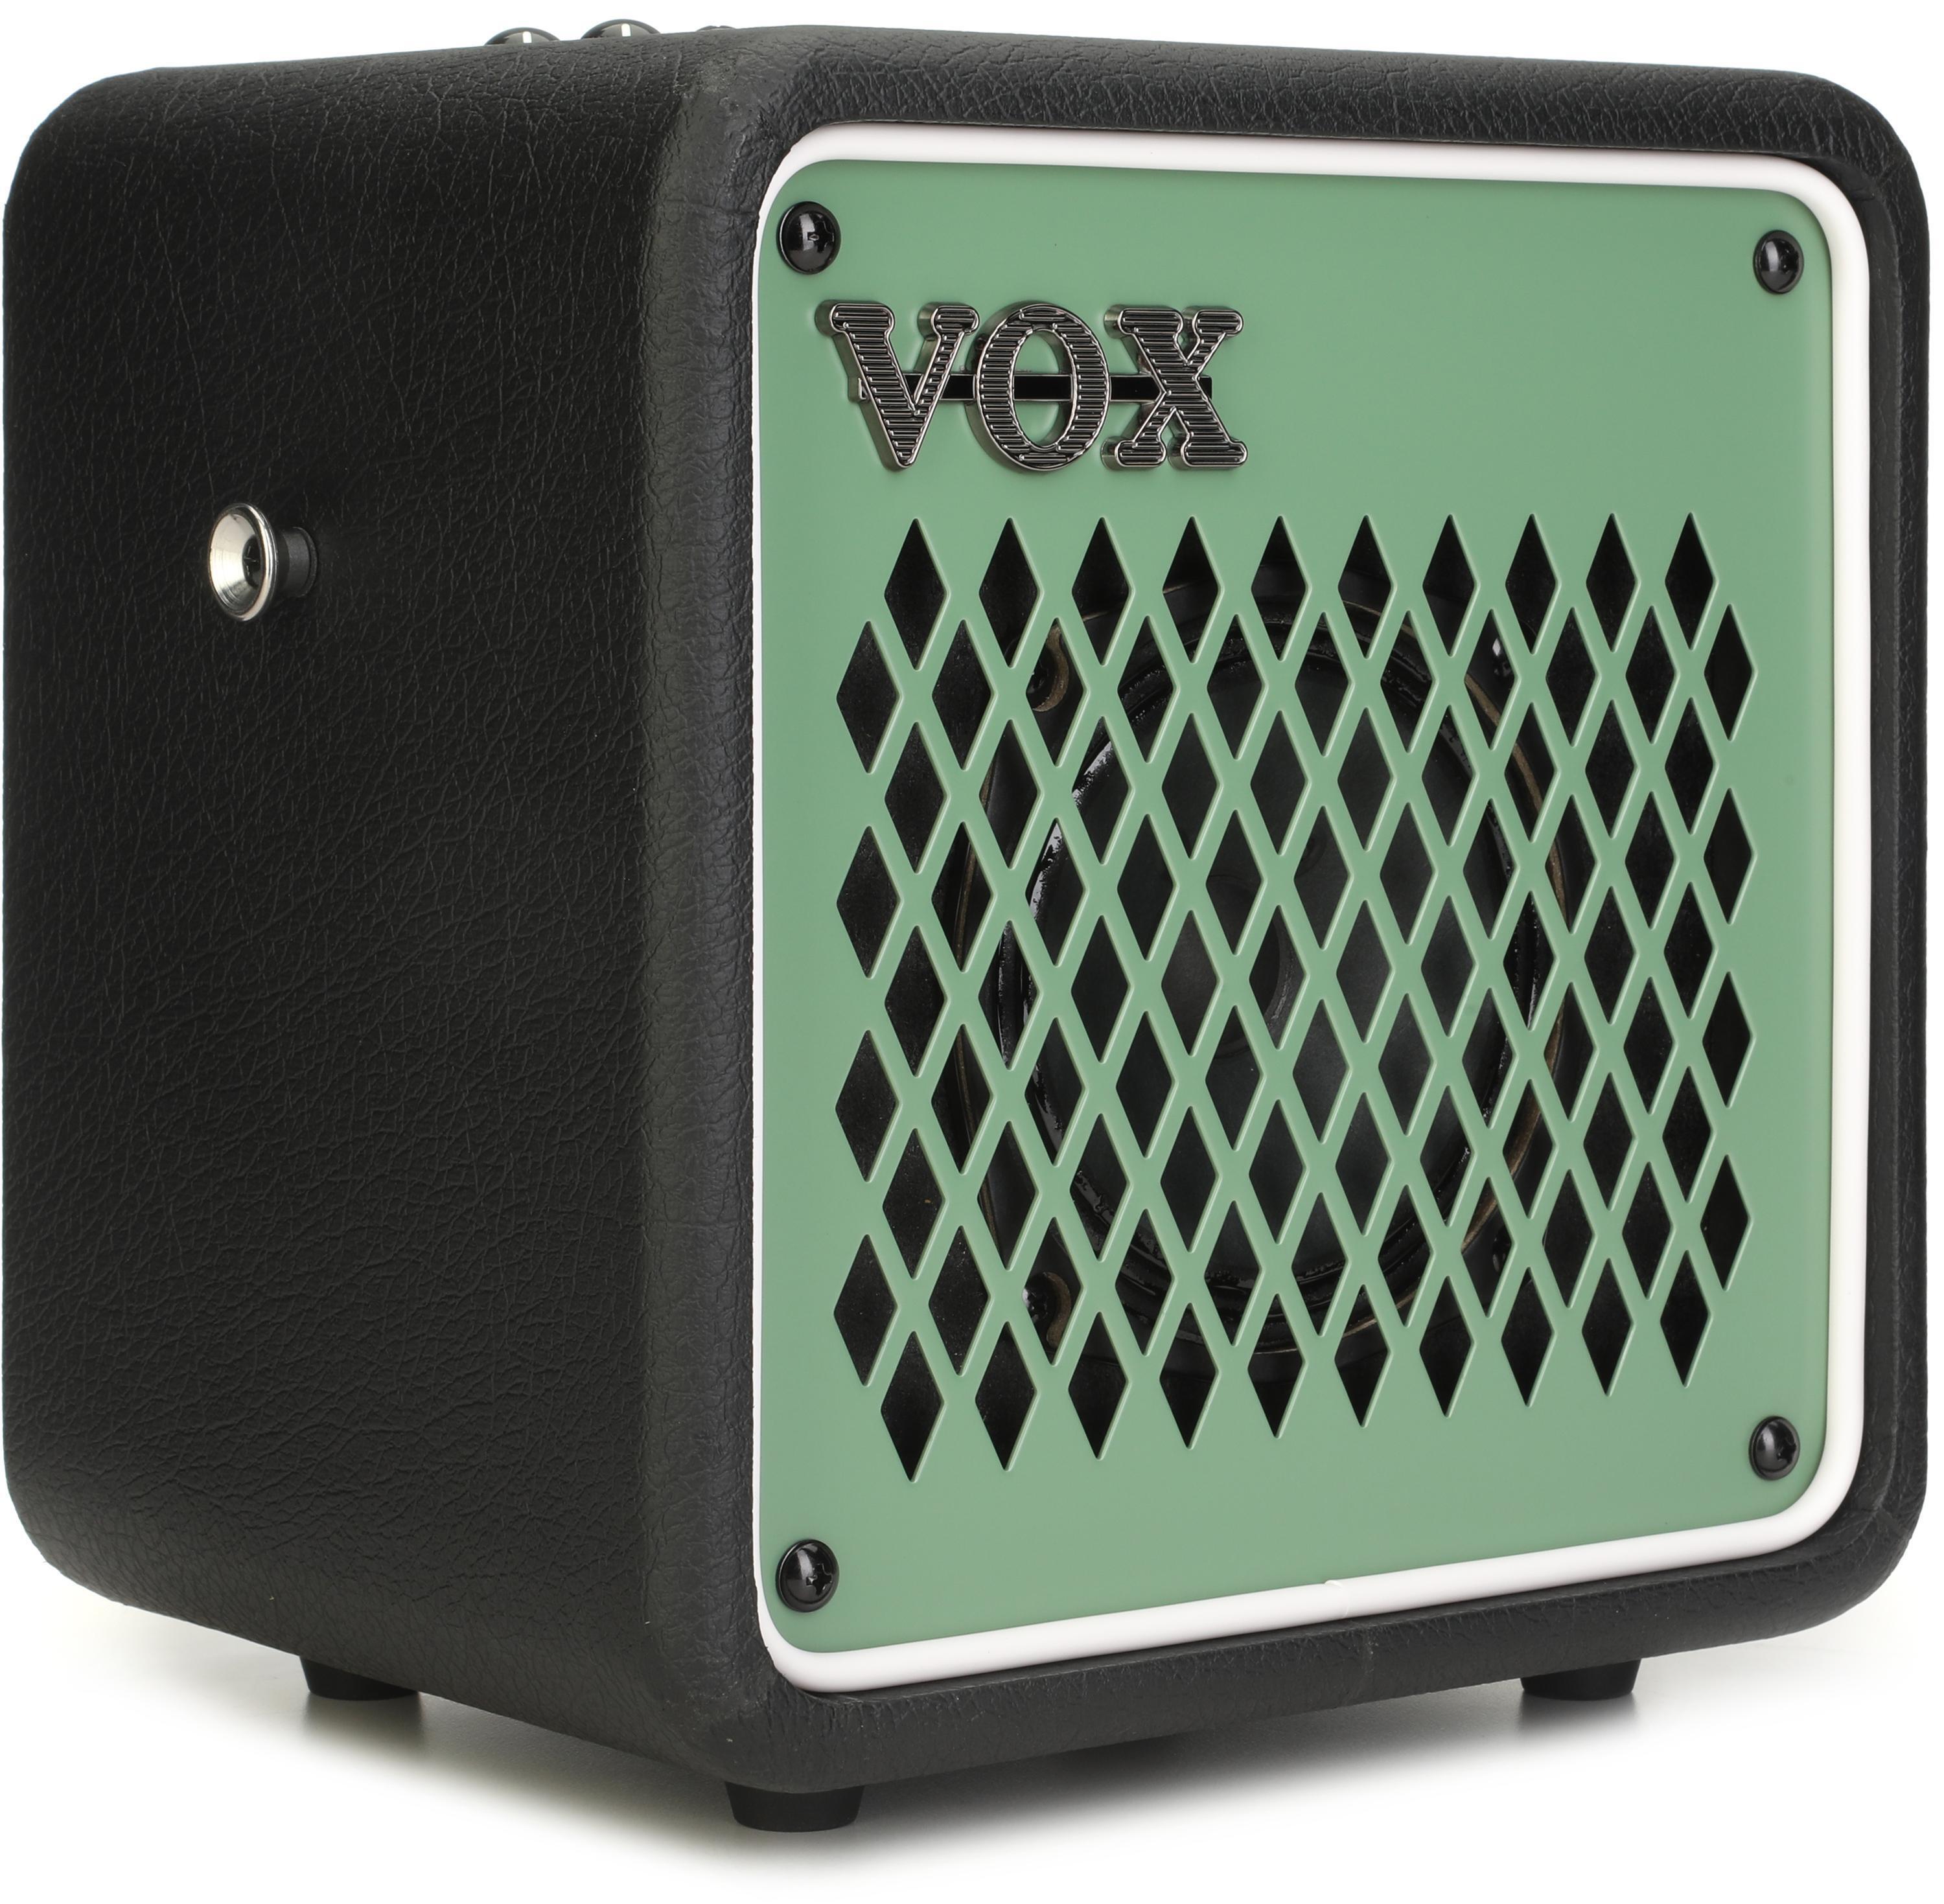 Bundled Item: Vox Mini Go 3 3-watt Portable Modeling Amp - Green